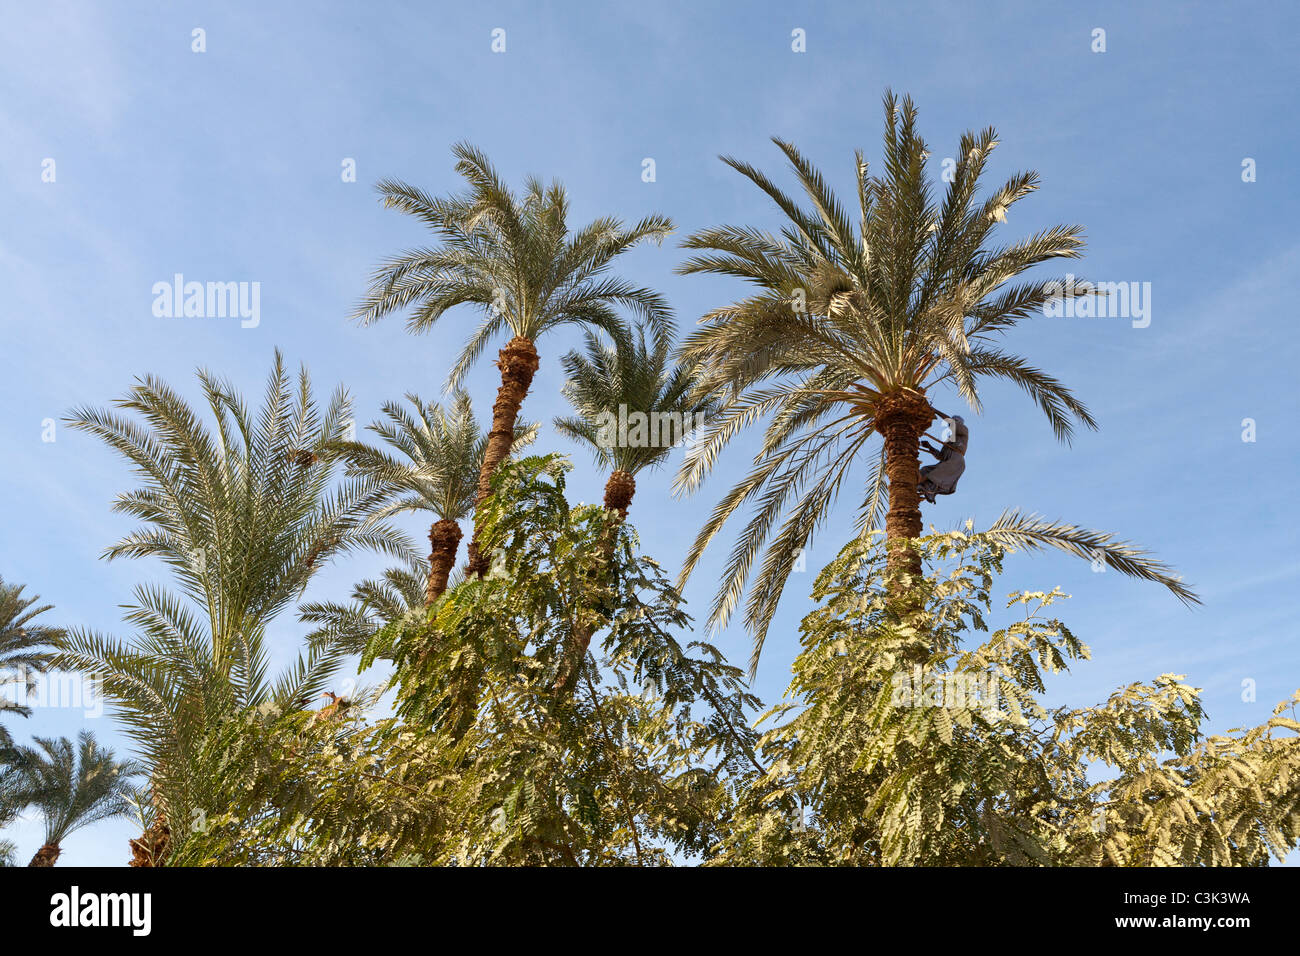 Un artigiano locale cordata alla sommità di un albero di palma con un'ascia per tagliare e potare, Egitto, Africa Foto Stock